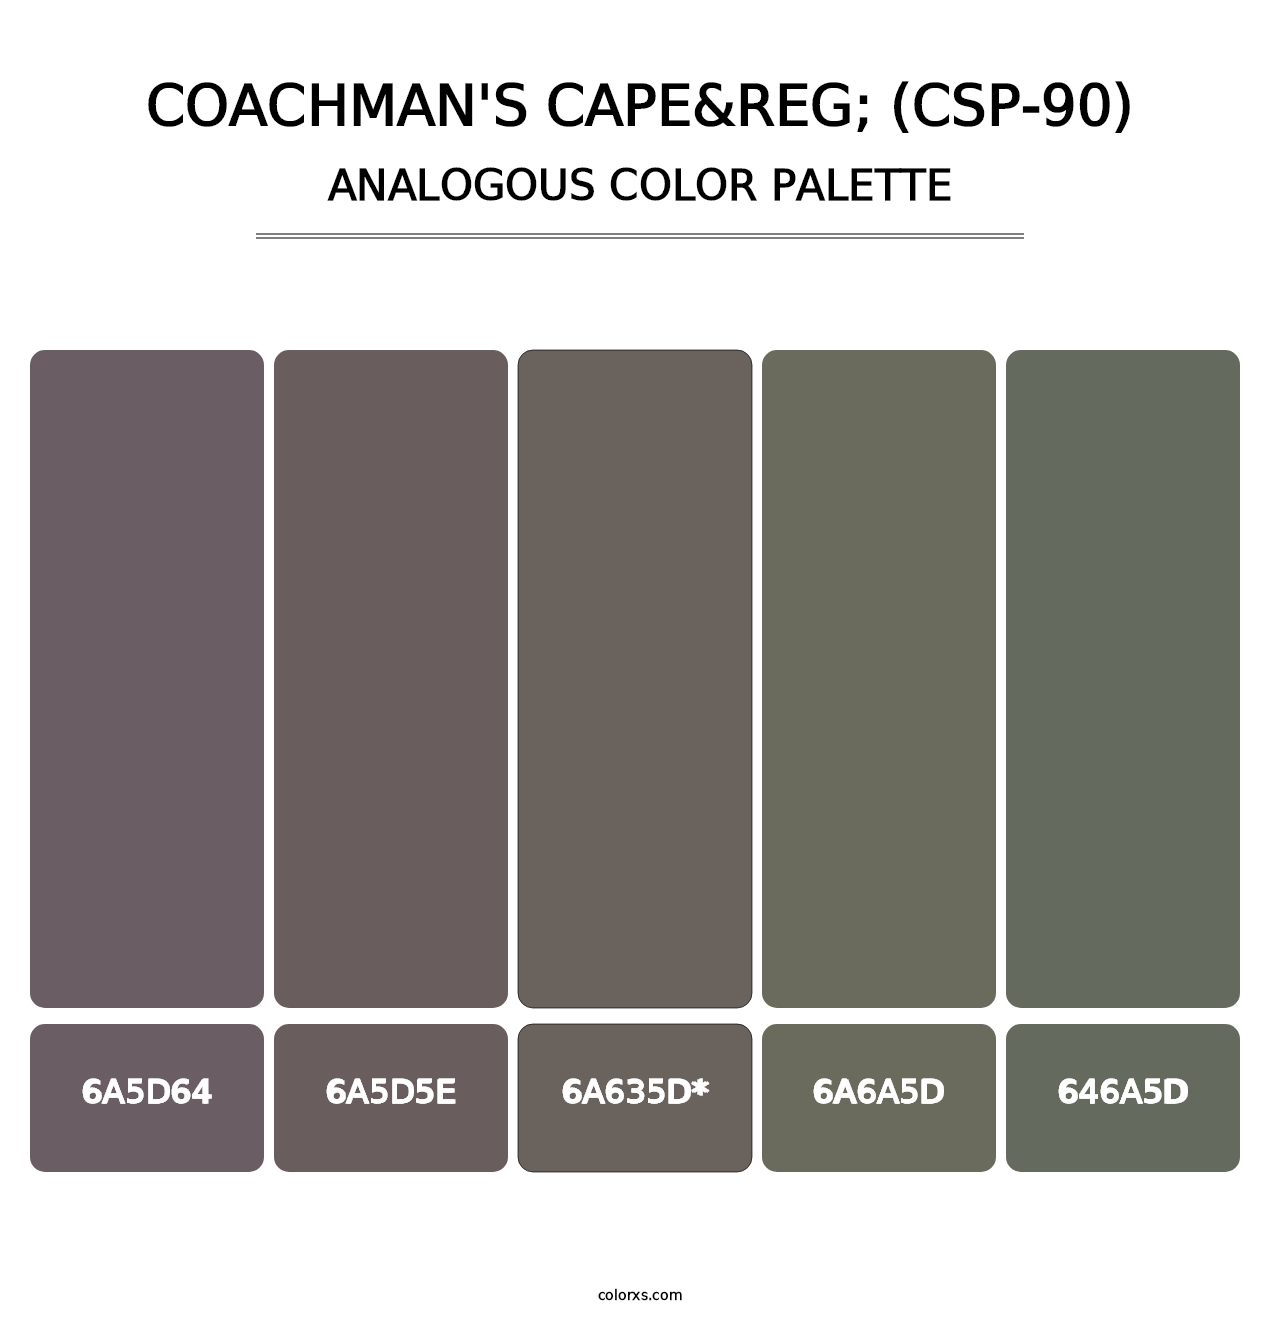 Coachman's Cape&reg; (CSP-90) - Analogous Color Palette